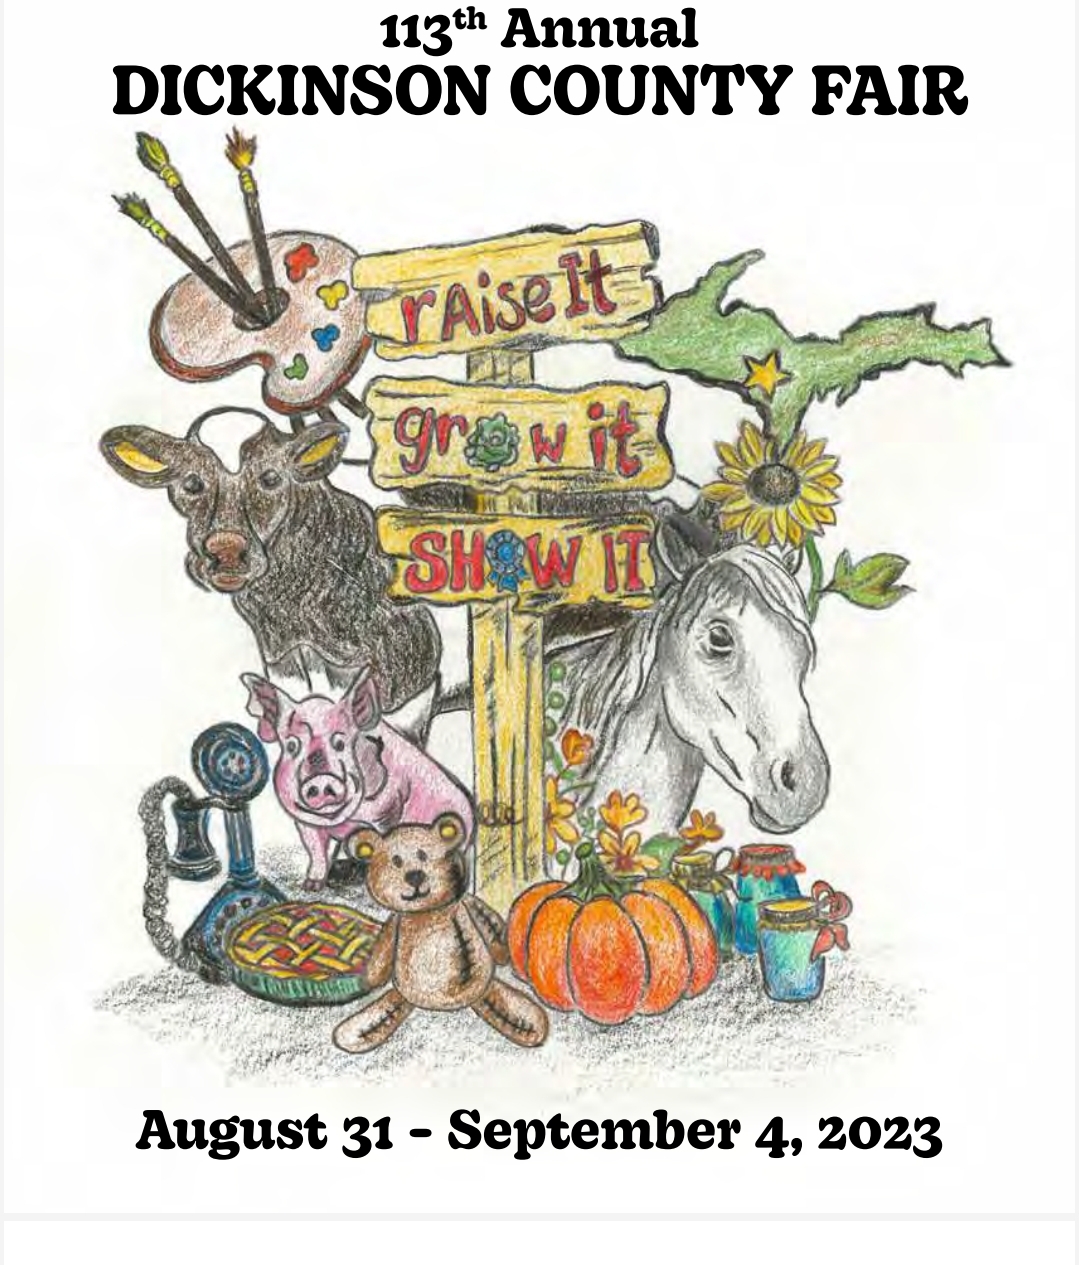 FairBook Dickinson County Fair